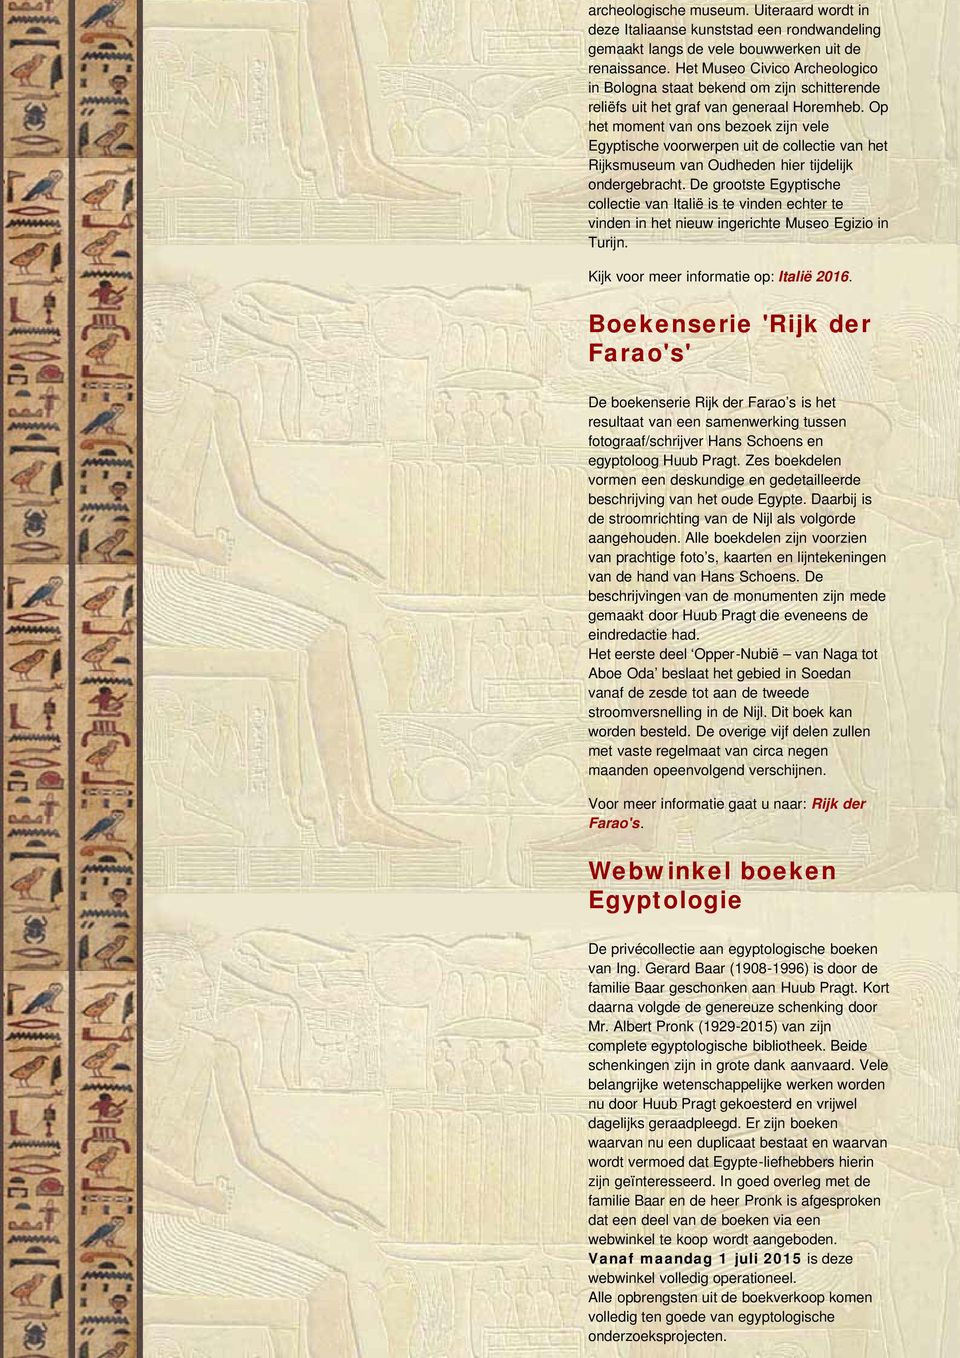 Op het moment van ons bezoek zijn vele Egyptische voorwerpen uit de collectie van het Rijksmuseum van Oudheden hier tijdelijk ondergebracht.